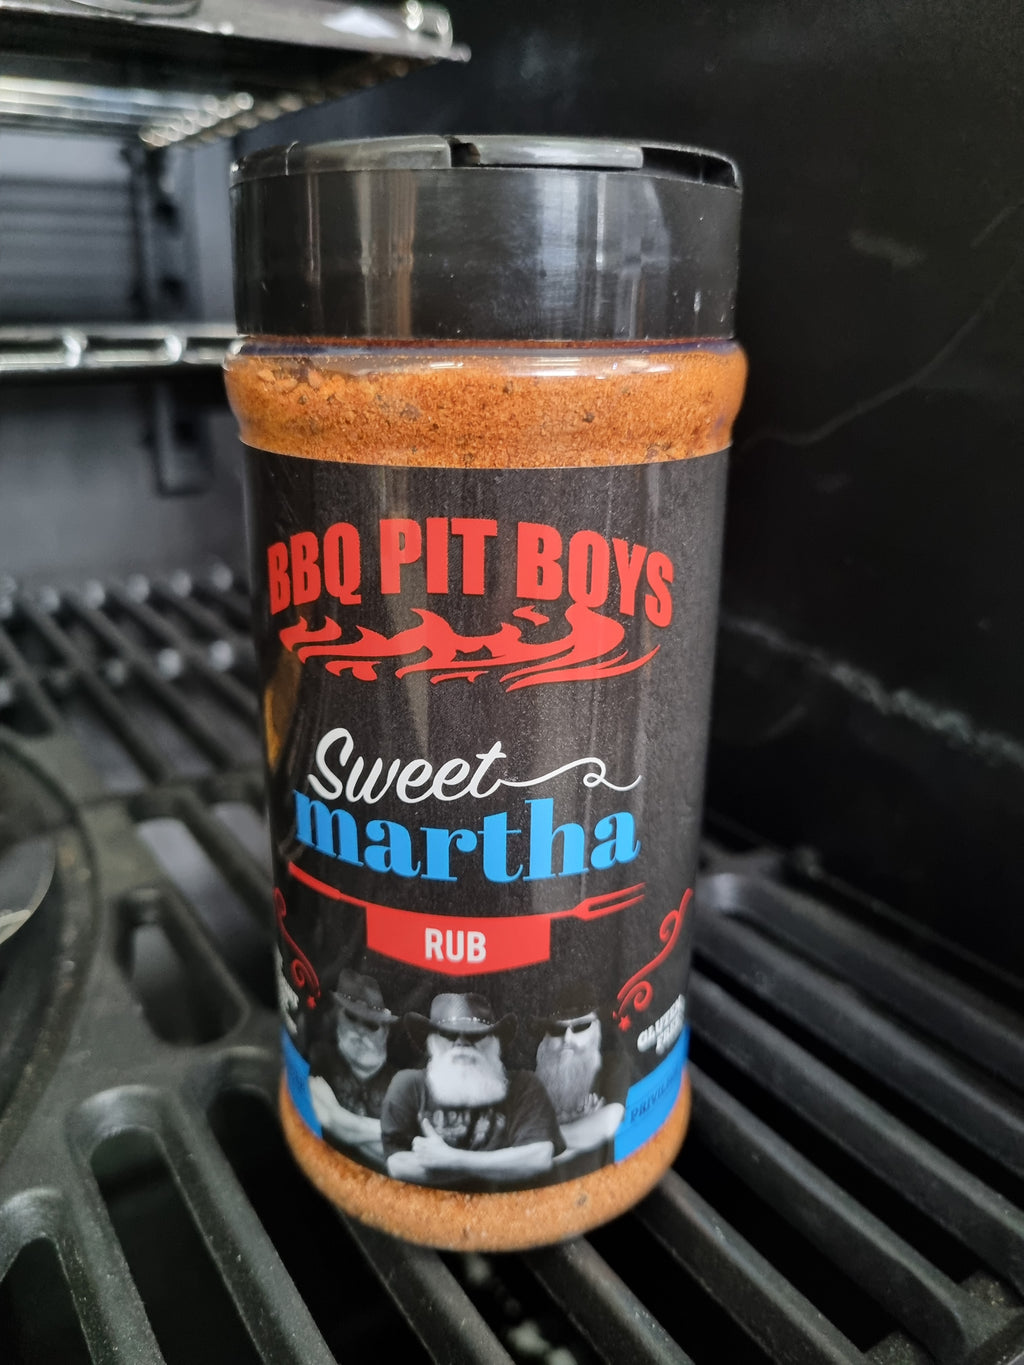 Sweet Martha by BBQ Pit Boys